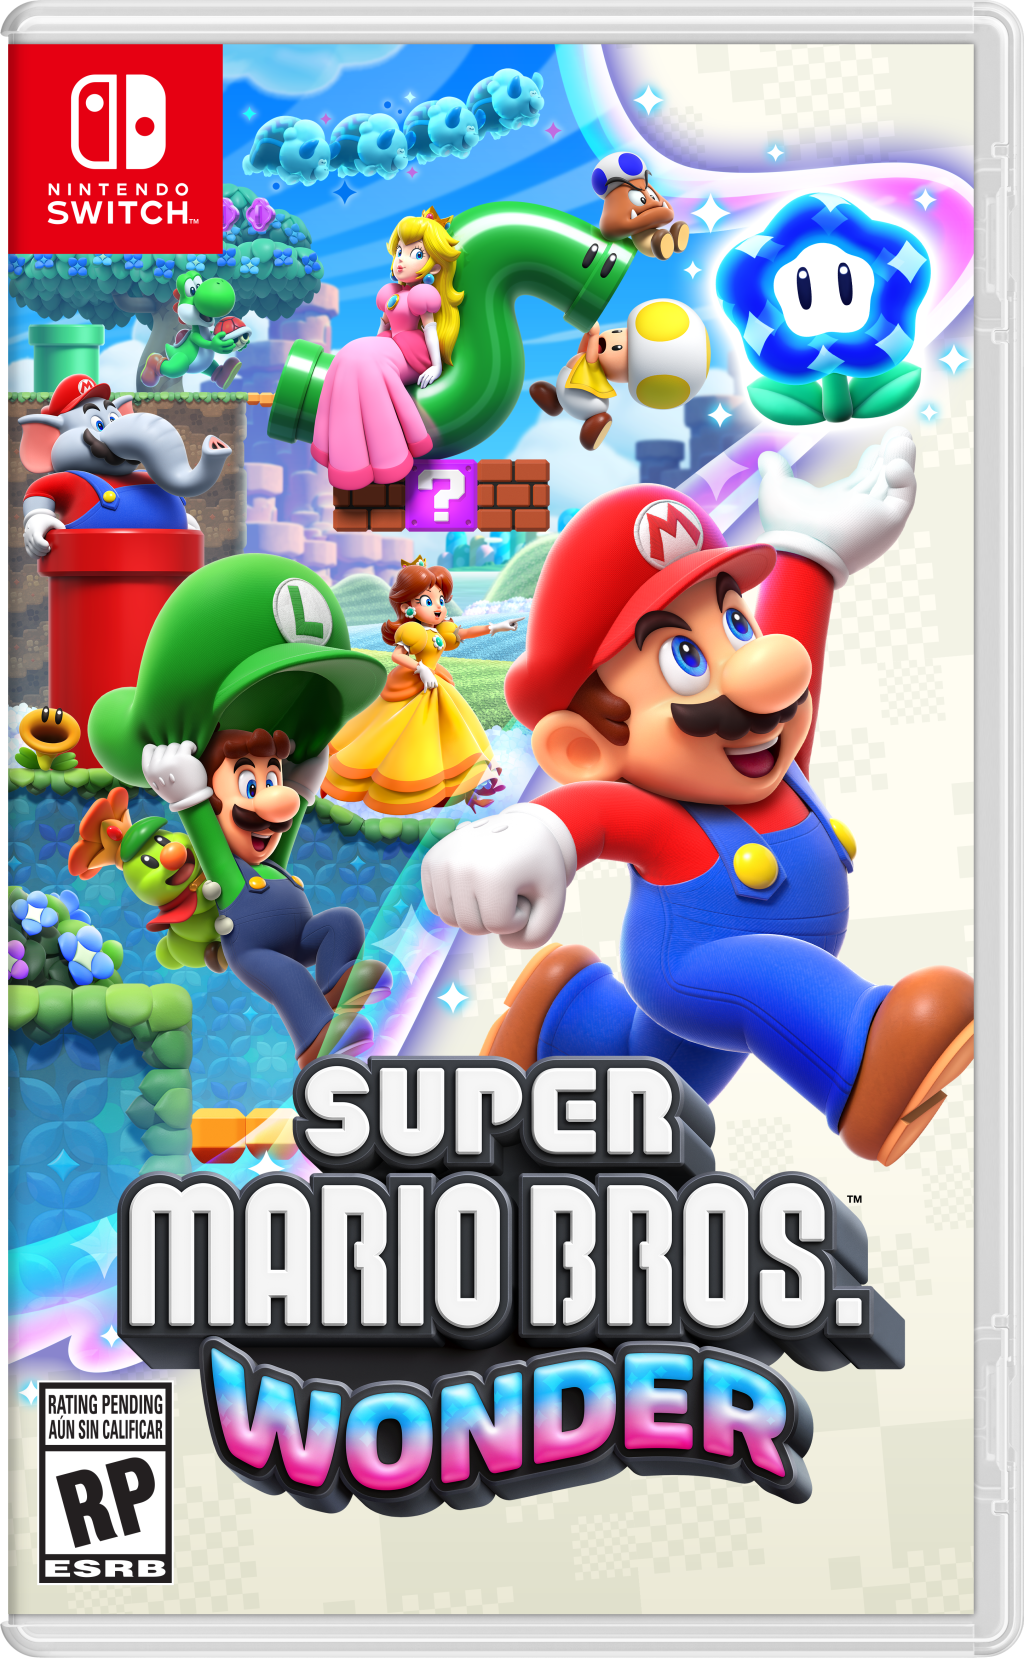 Super Mario Bros. Wonder Announced